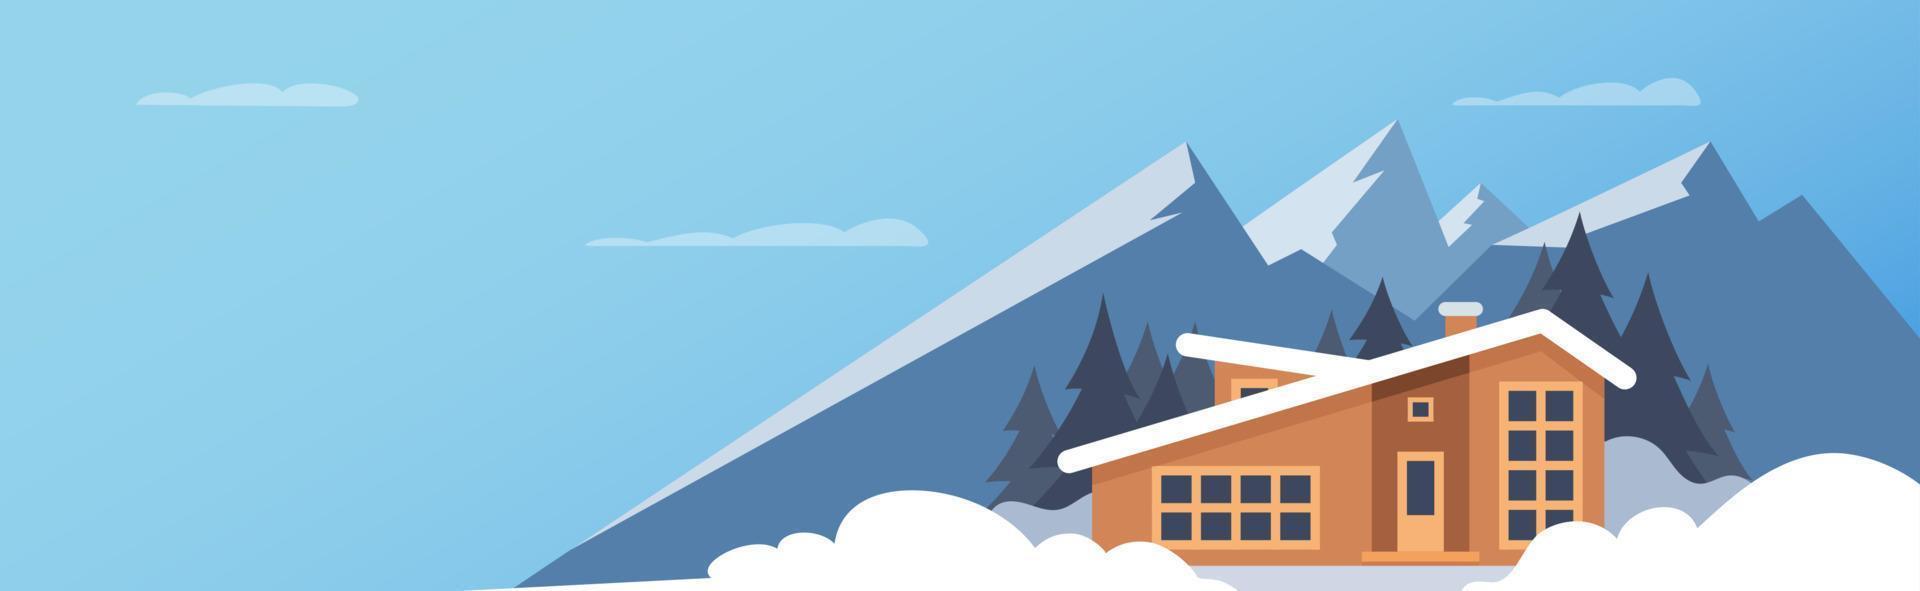 esporte de inverno. paisagem de montanha de inverno com casa grande para turistas. férias de inverno nas montanhas, estações de esqui, aluguel de casas. ilustração em vetor plana.